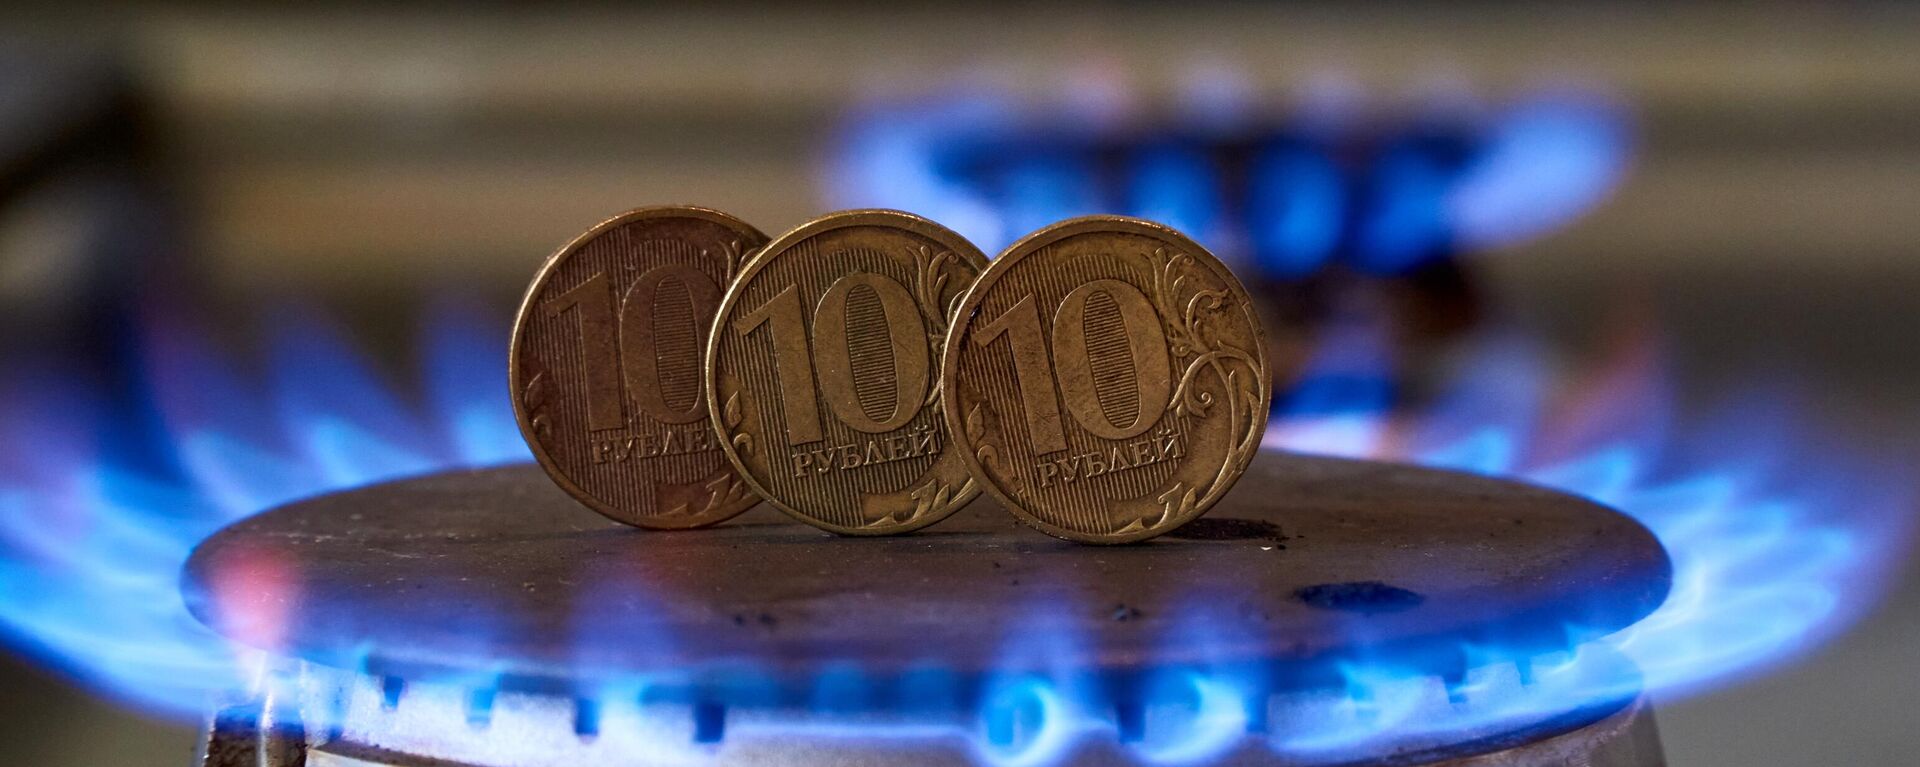 Монеты номиналам десять рублей на газовой плите - Sputnik Латвия, 1920, 30.07.2022